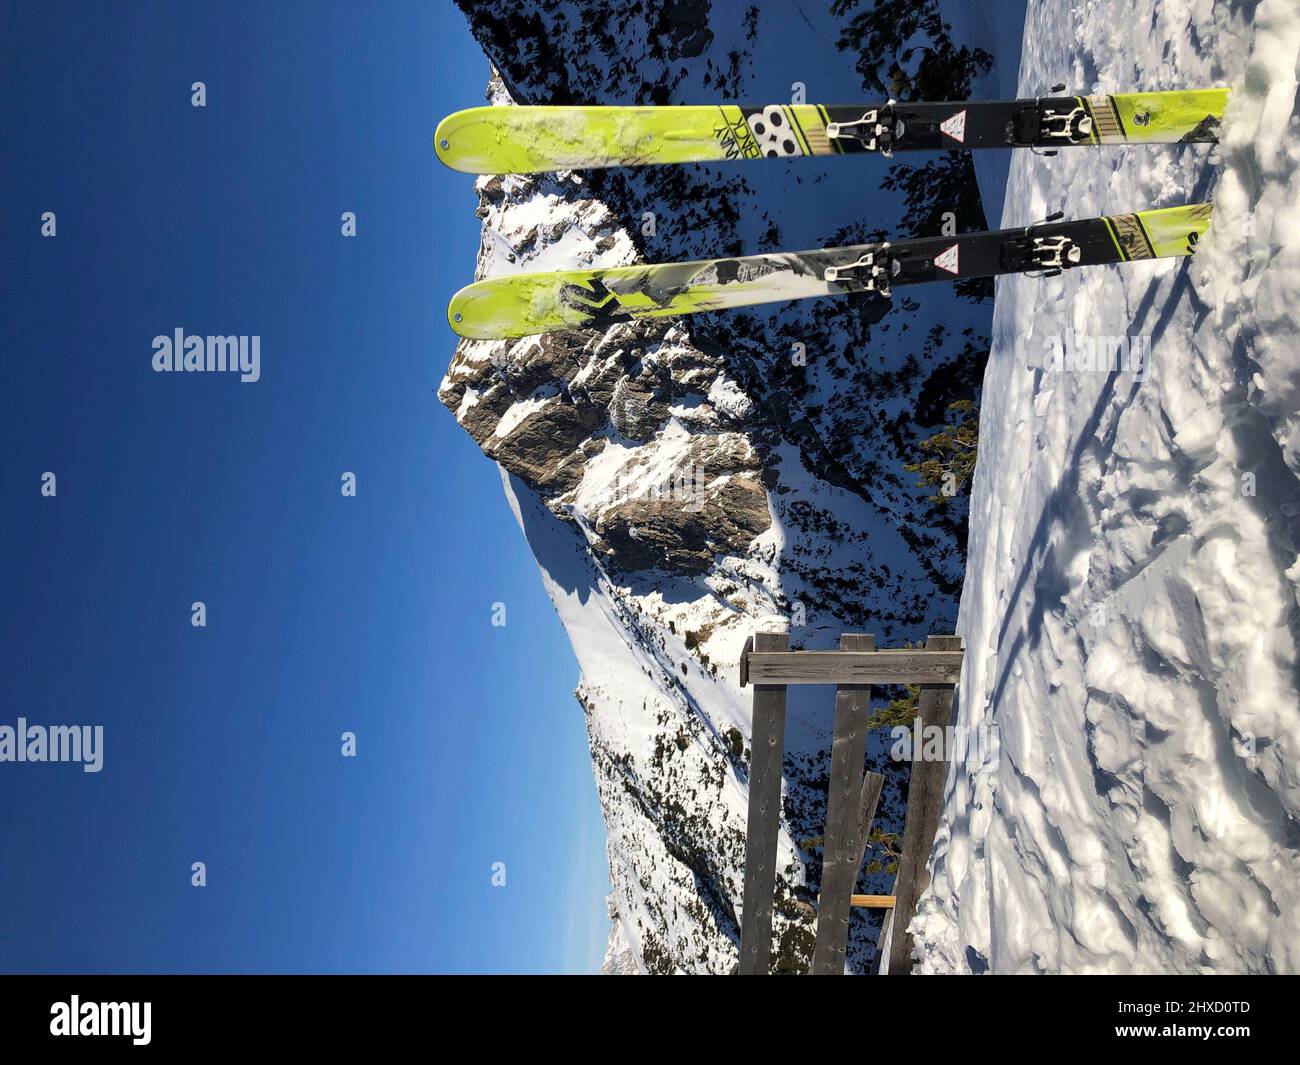 Un paio di sci da turismo bloccato nella neve, Seefelder Spitze sullo sfondo, paesaggio invernale, natura, montagne, Härmelekopf, Rosshütte, Seefeld, Tirolo, Austria Foto Stock